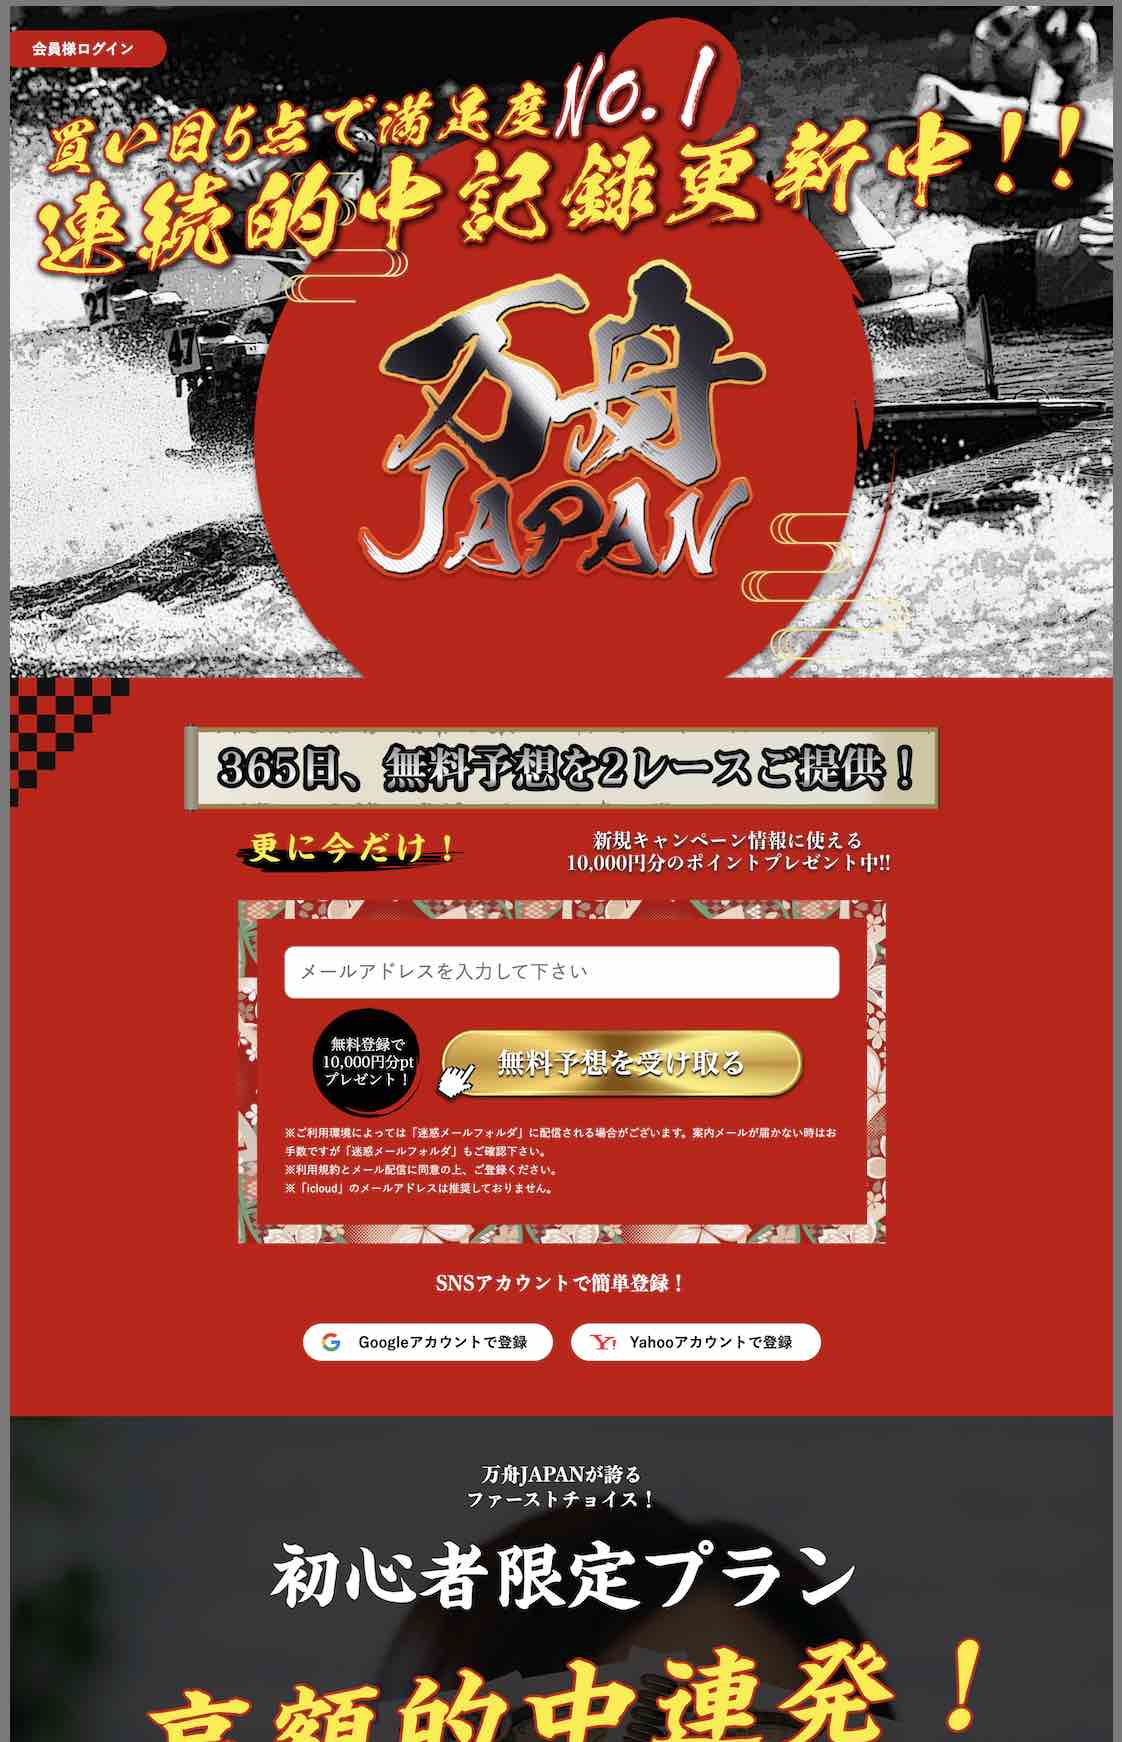 万舟JAPAN(万舟ジャパン)という競艇予想サイト(ボートレース予想サイト)の非会員TOP